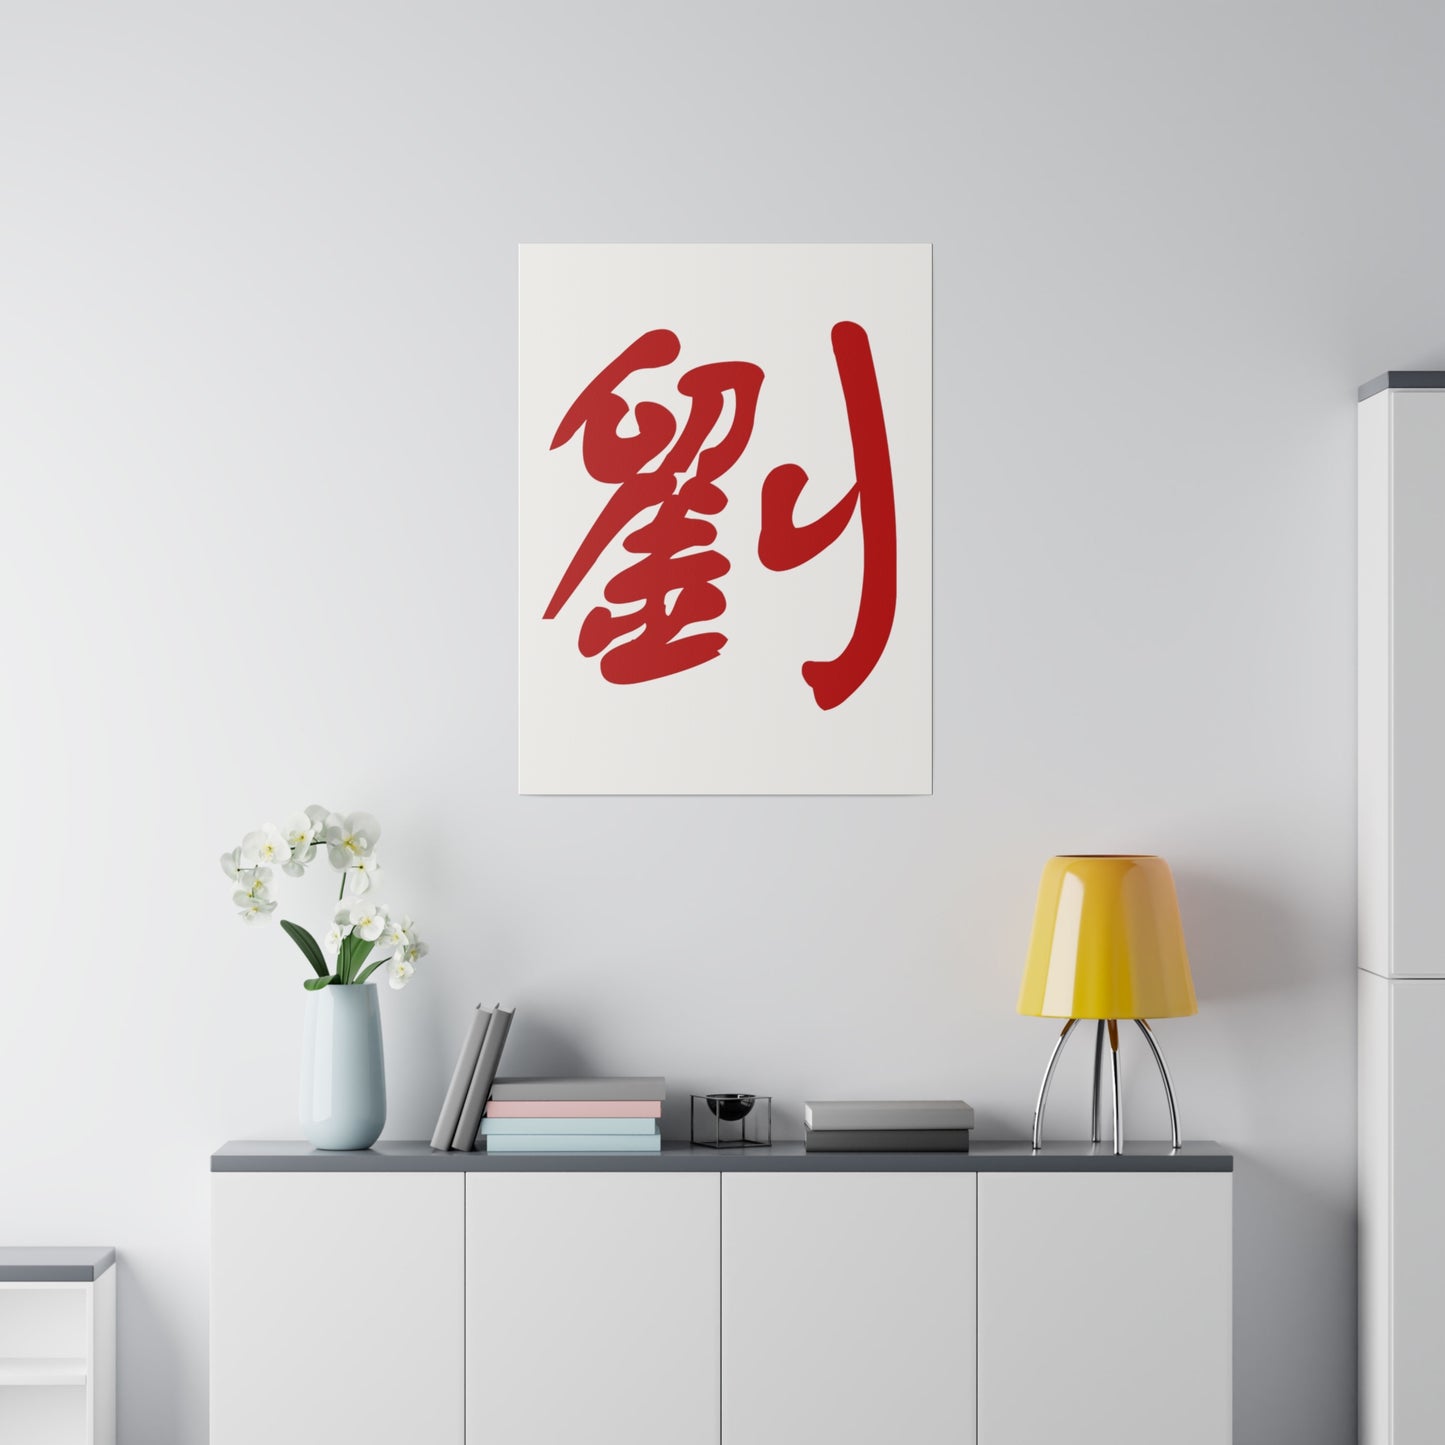 劉 Liu/Lau Matte Canvas, Stretched, 0.75"  Custom Text Design Chinese Character Family Name Surname